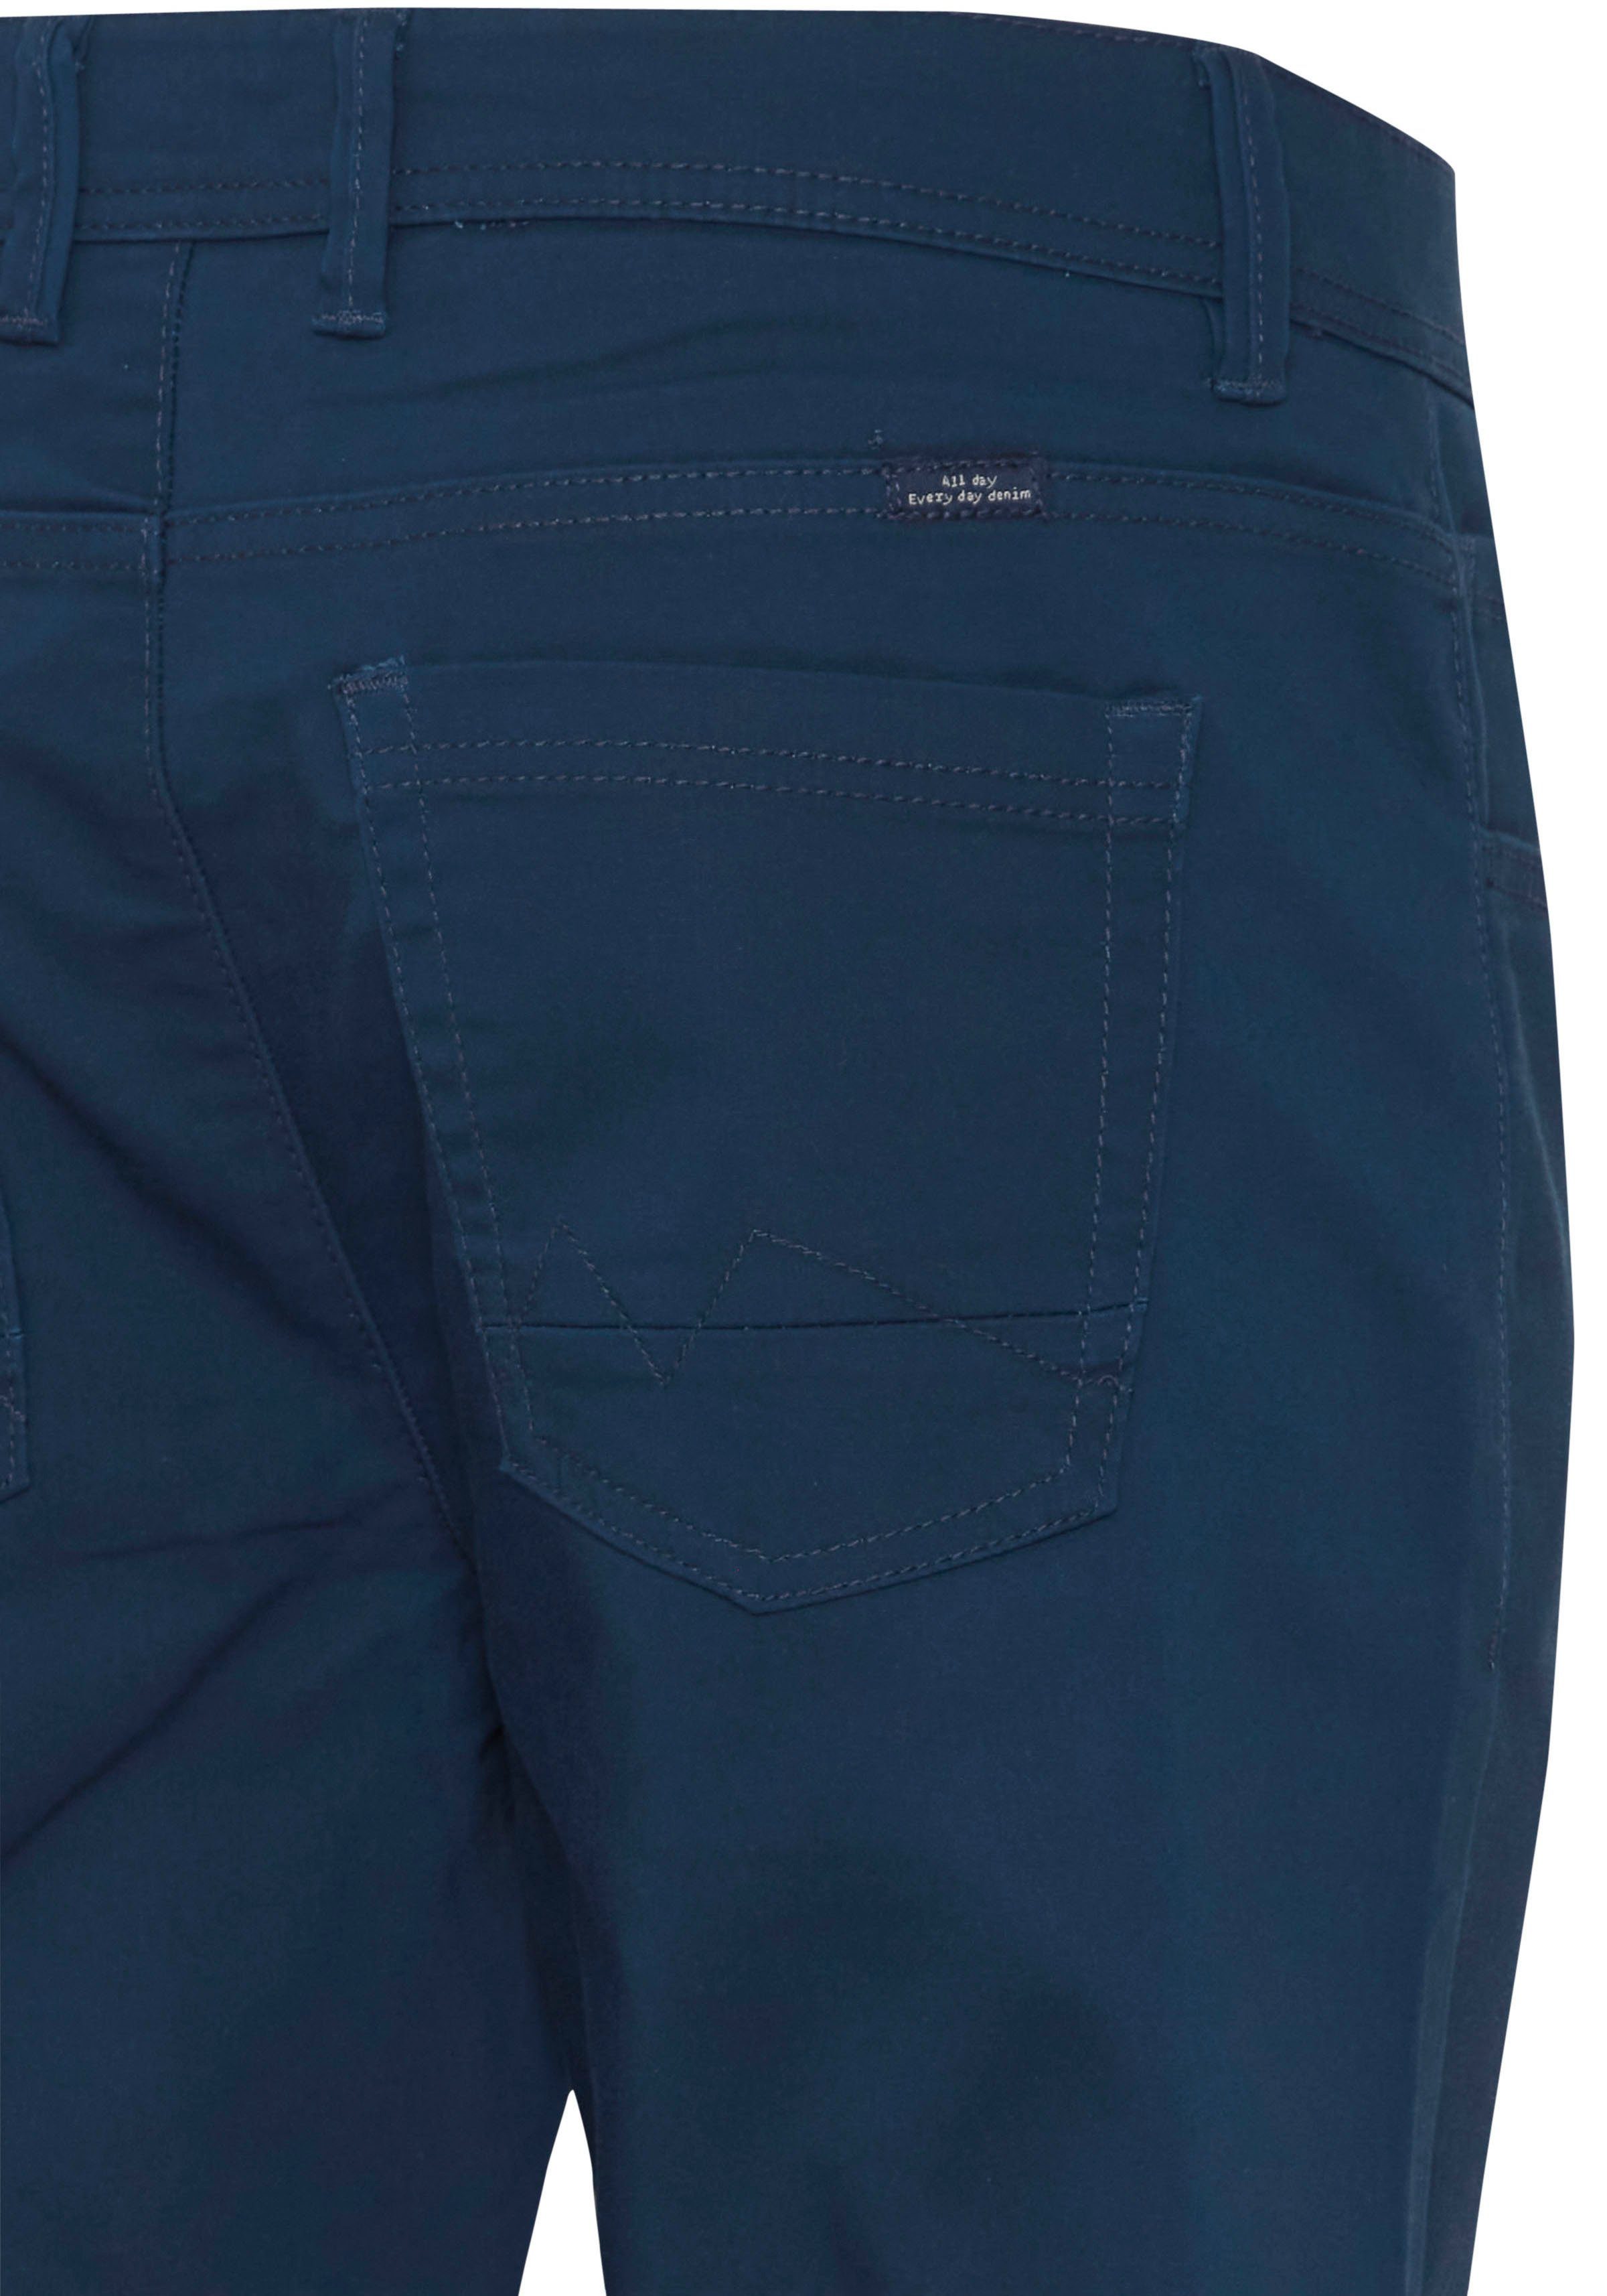 blue BL-Trousers 5-Pocket-Hose Blend